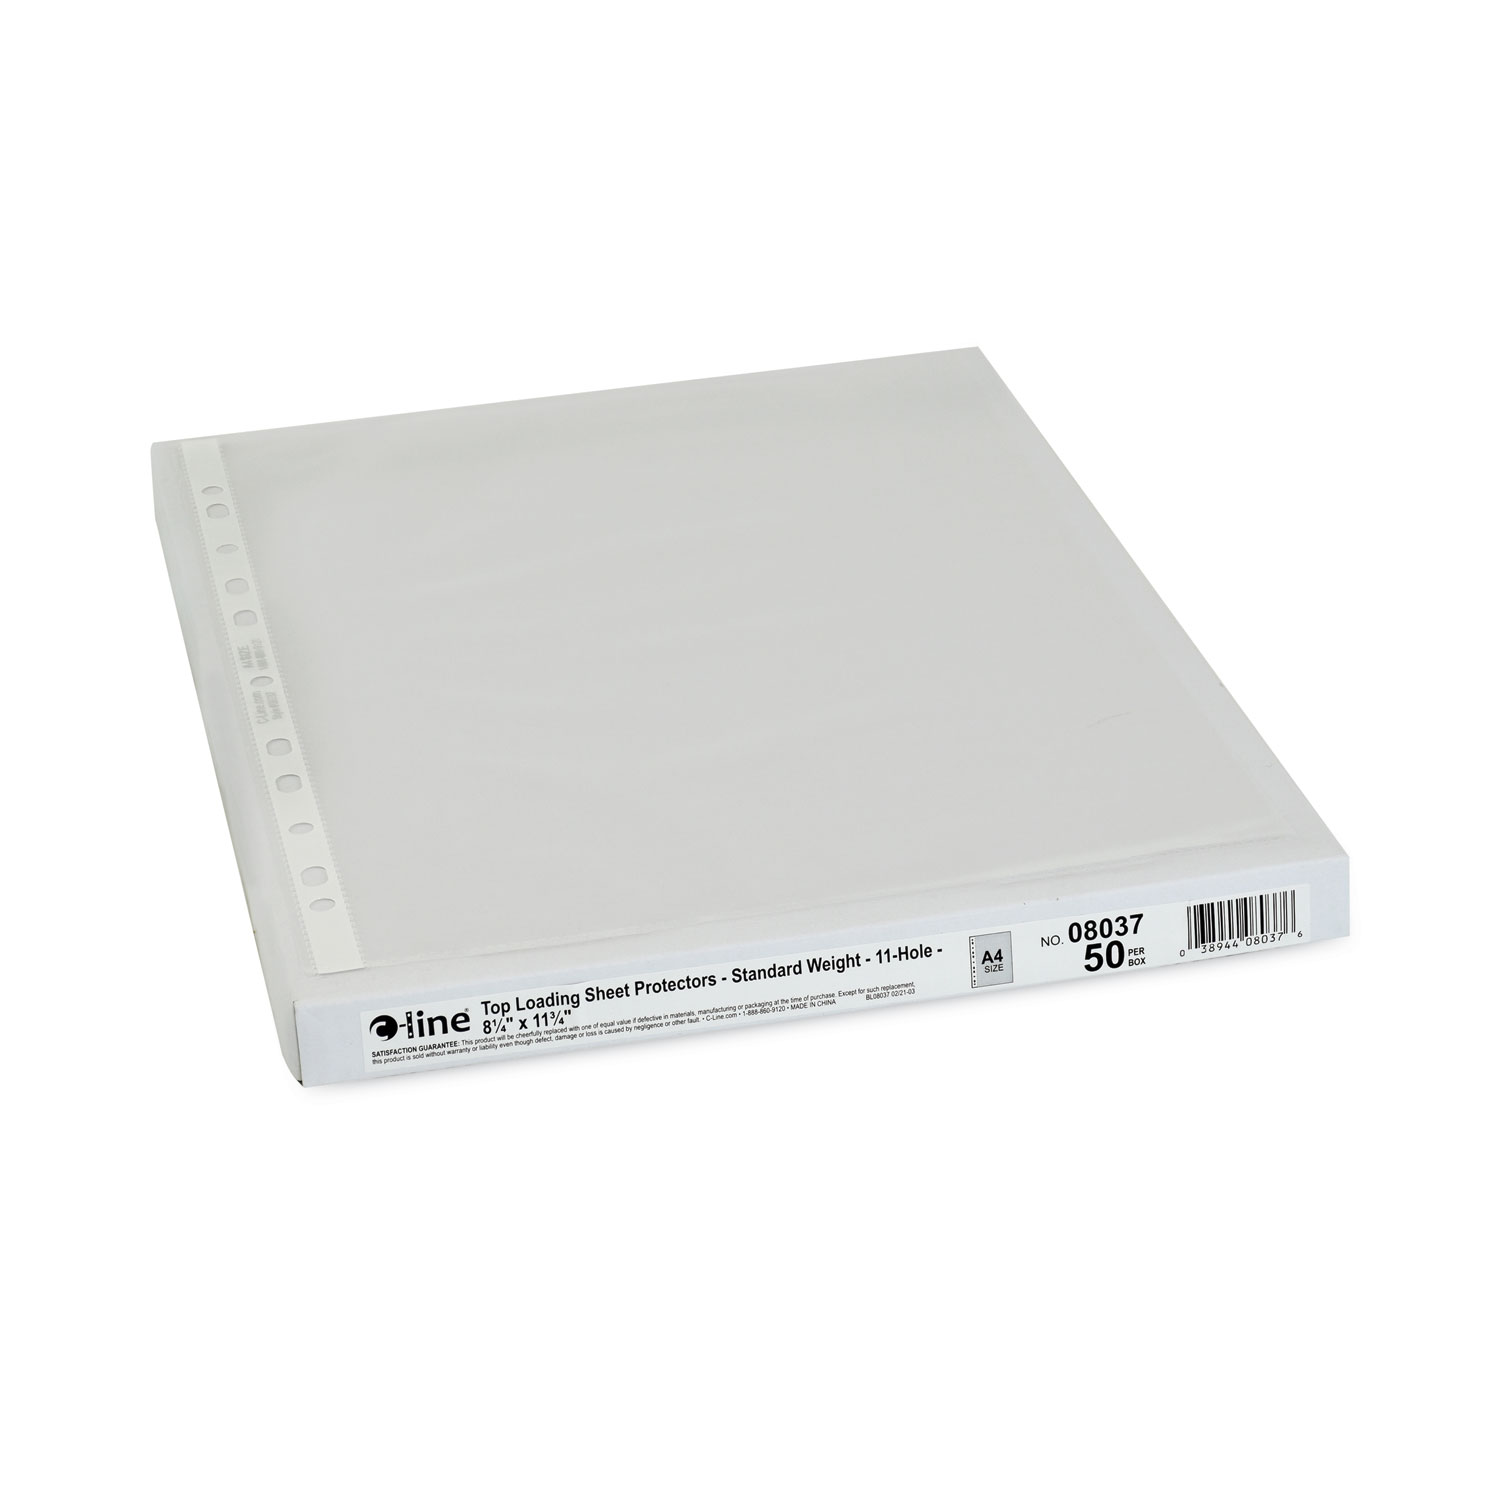 C-Line Standard Weight Polypropylene Sheet Protector, Clear, 11 x 8 1/2, 100/